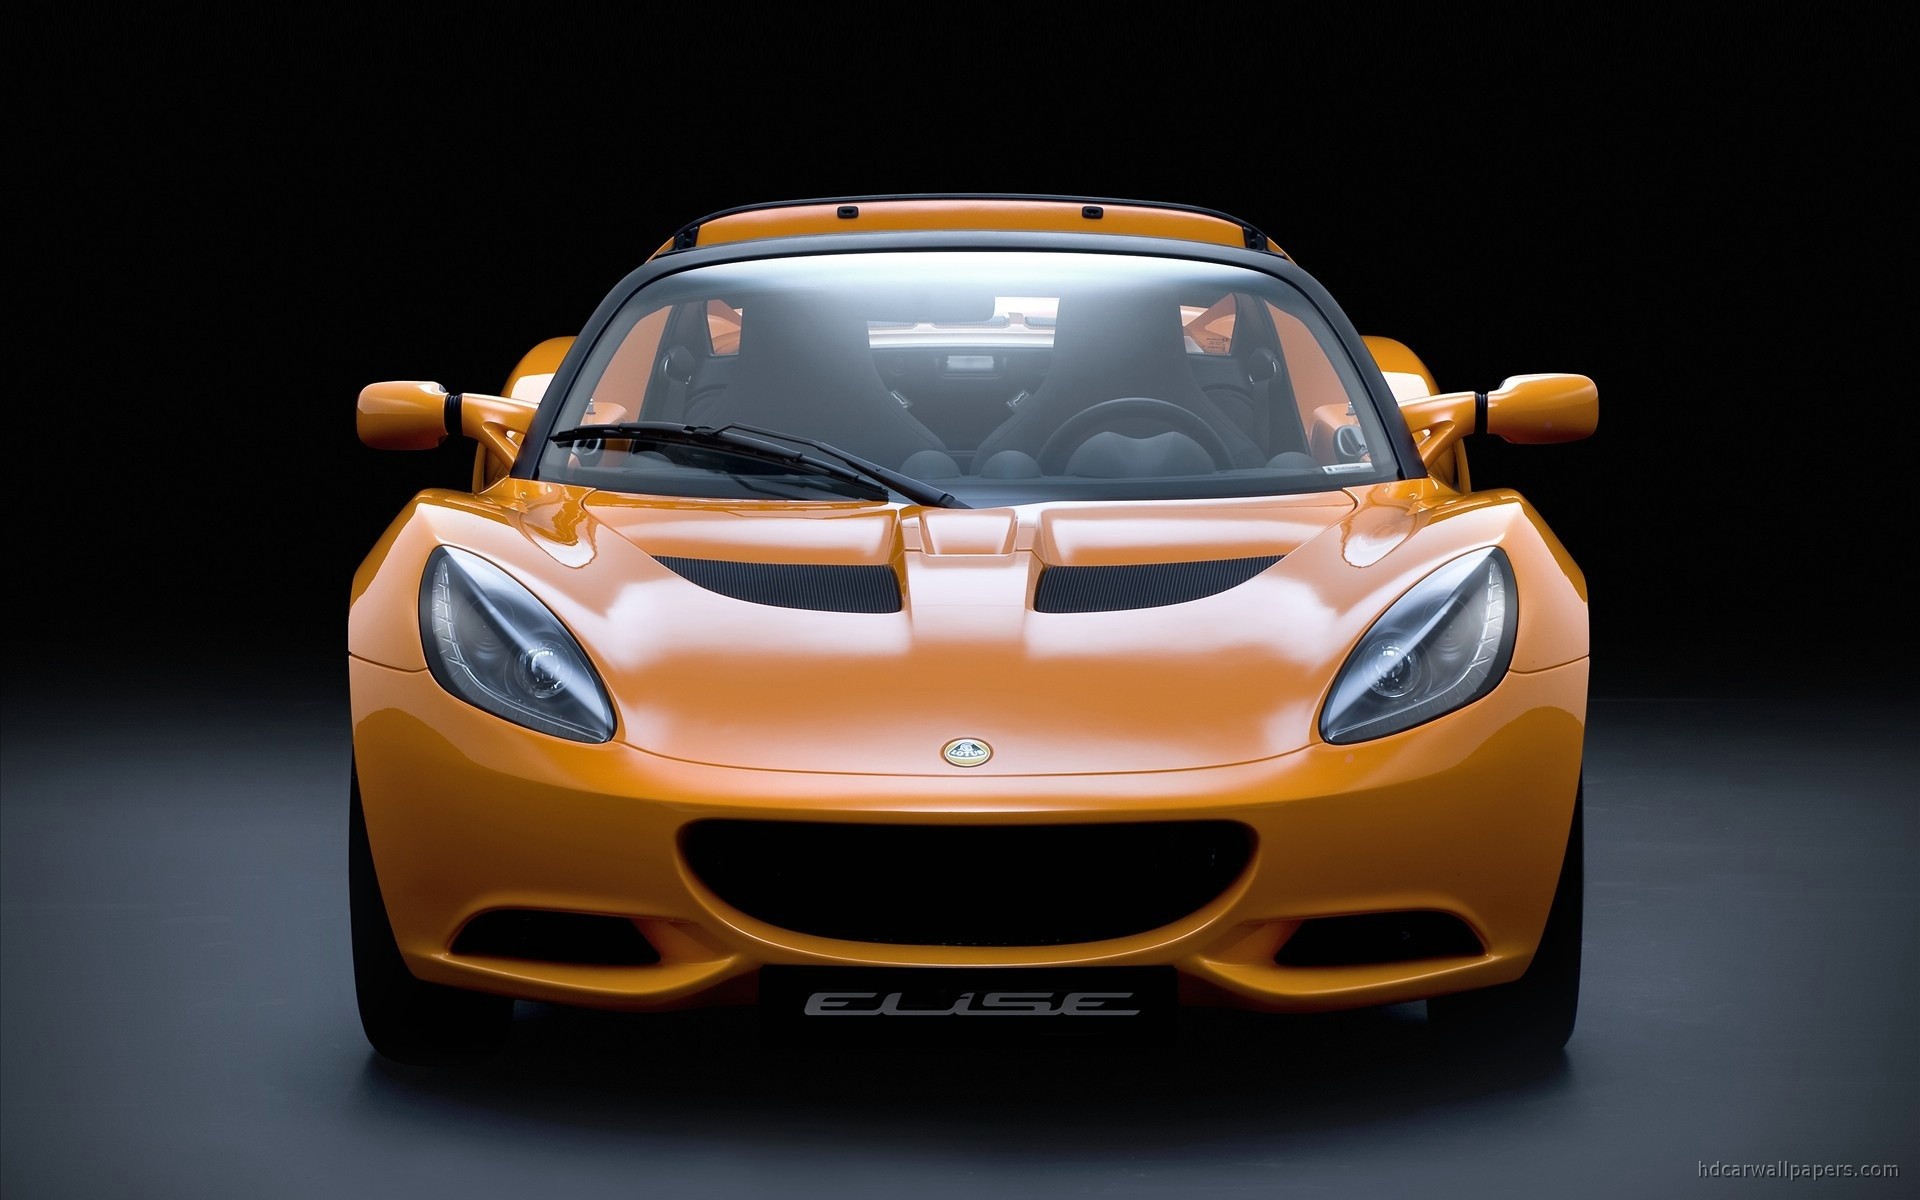 cars, vehicles, Lotus Elise, Lotus - desktop wallpaper